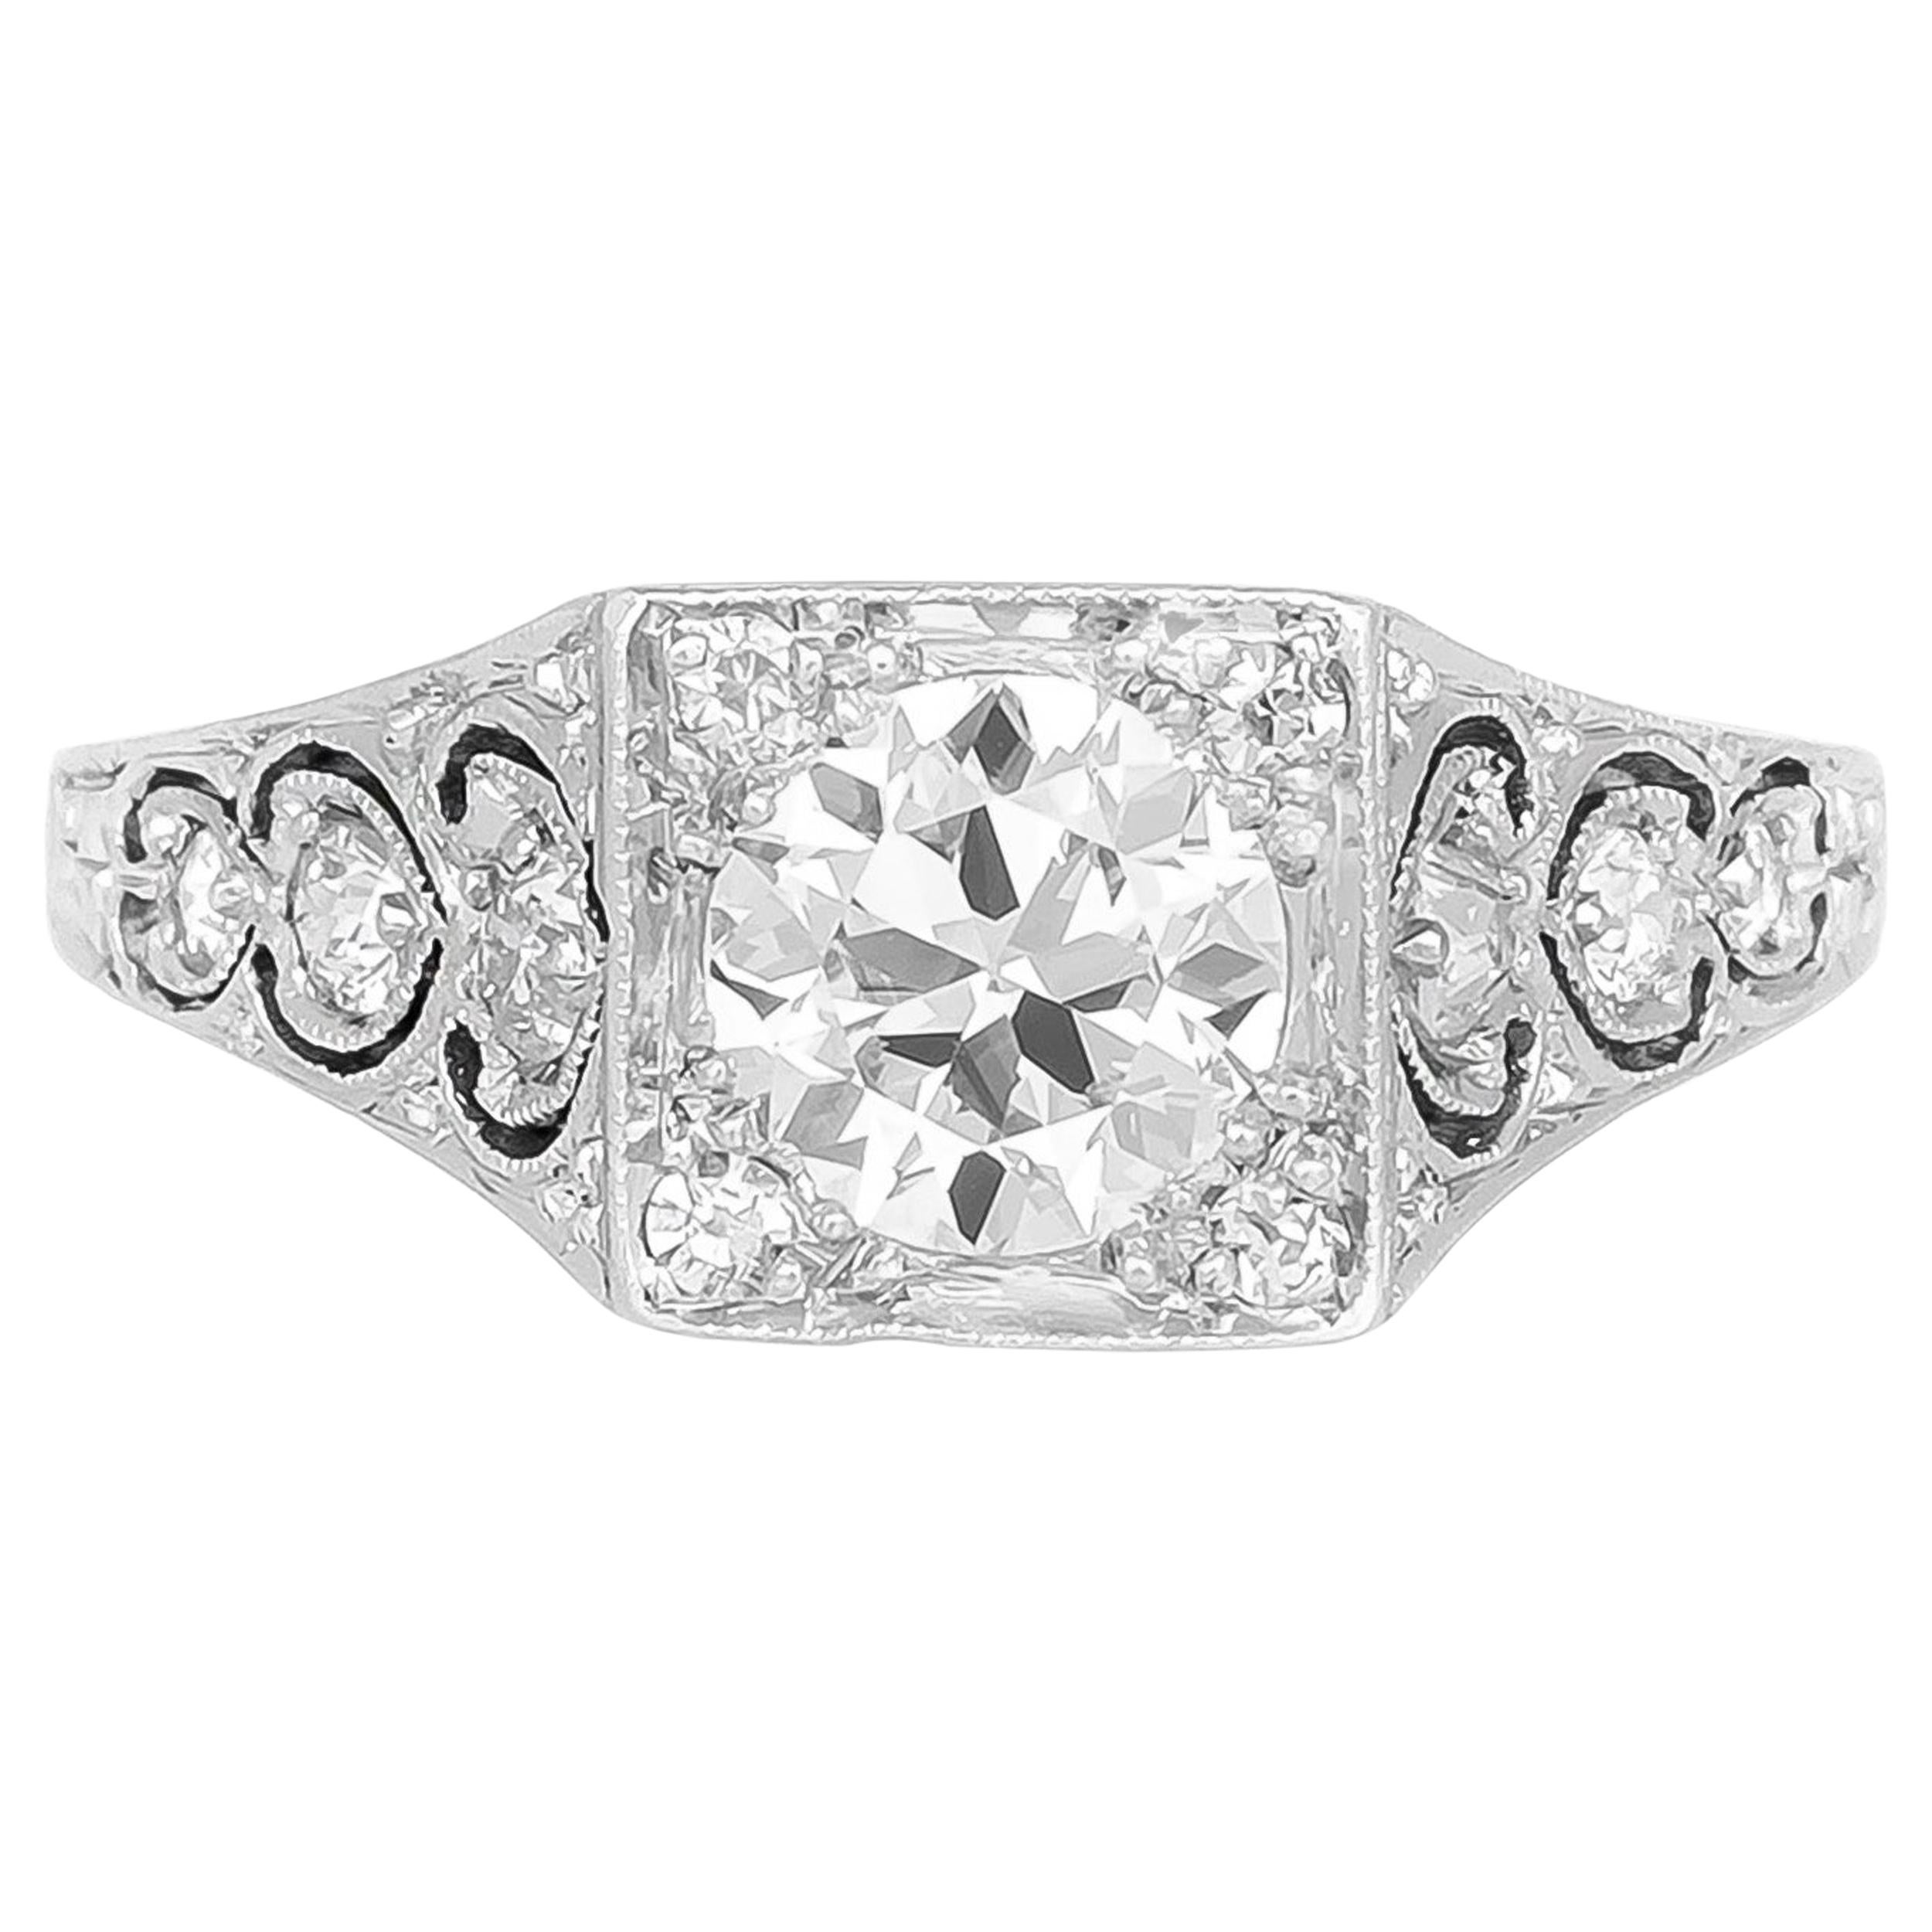 Bague de fiançailles avec un magnifique diamant rond filigrane des années 1920-1930